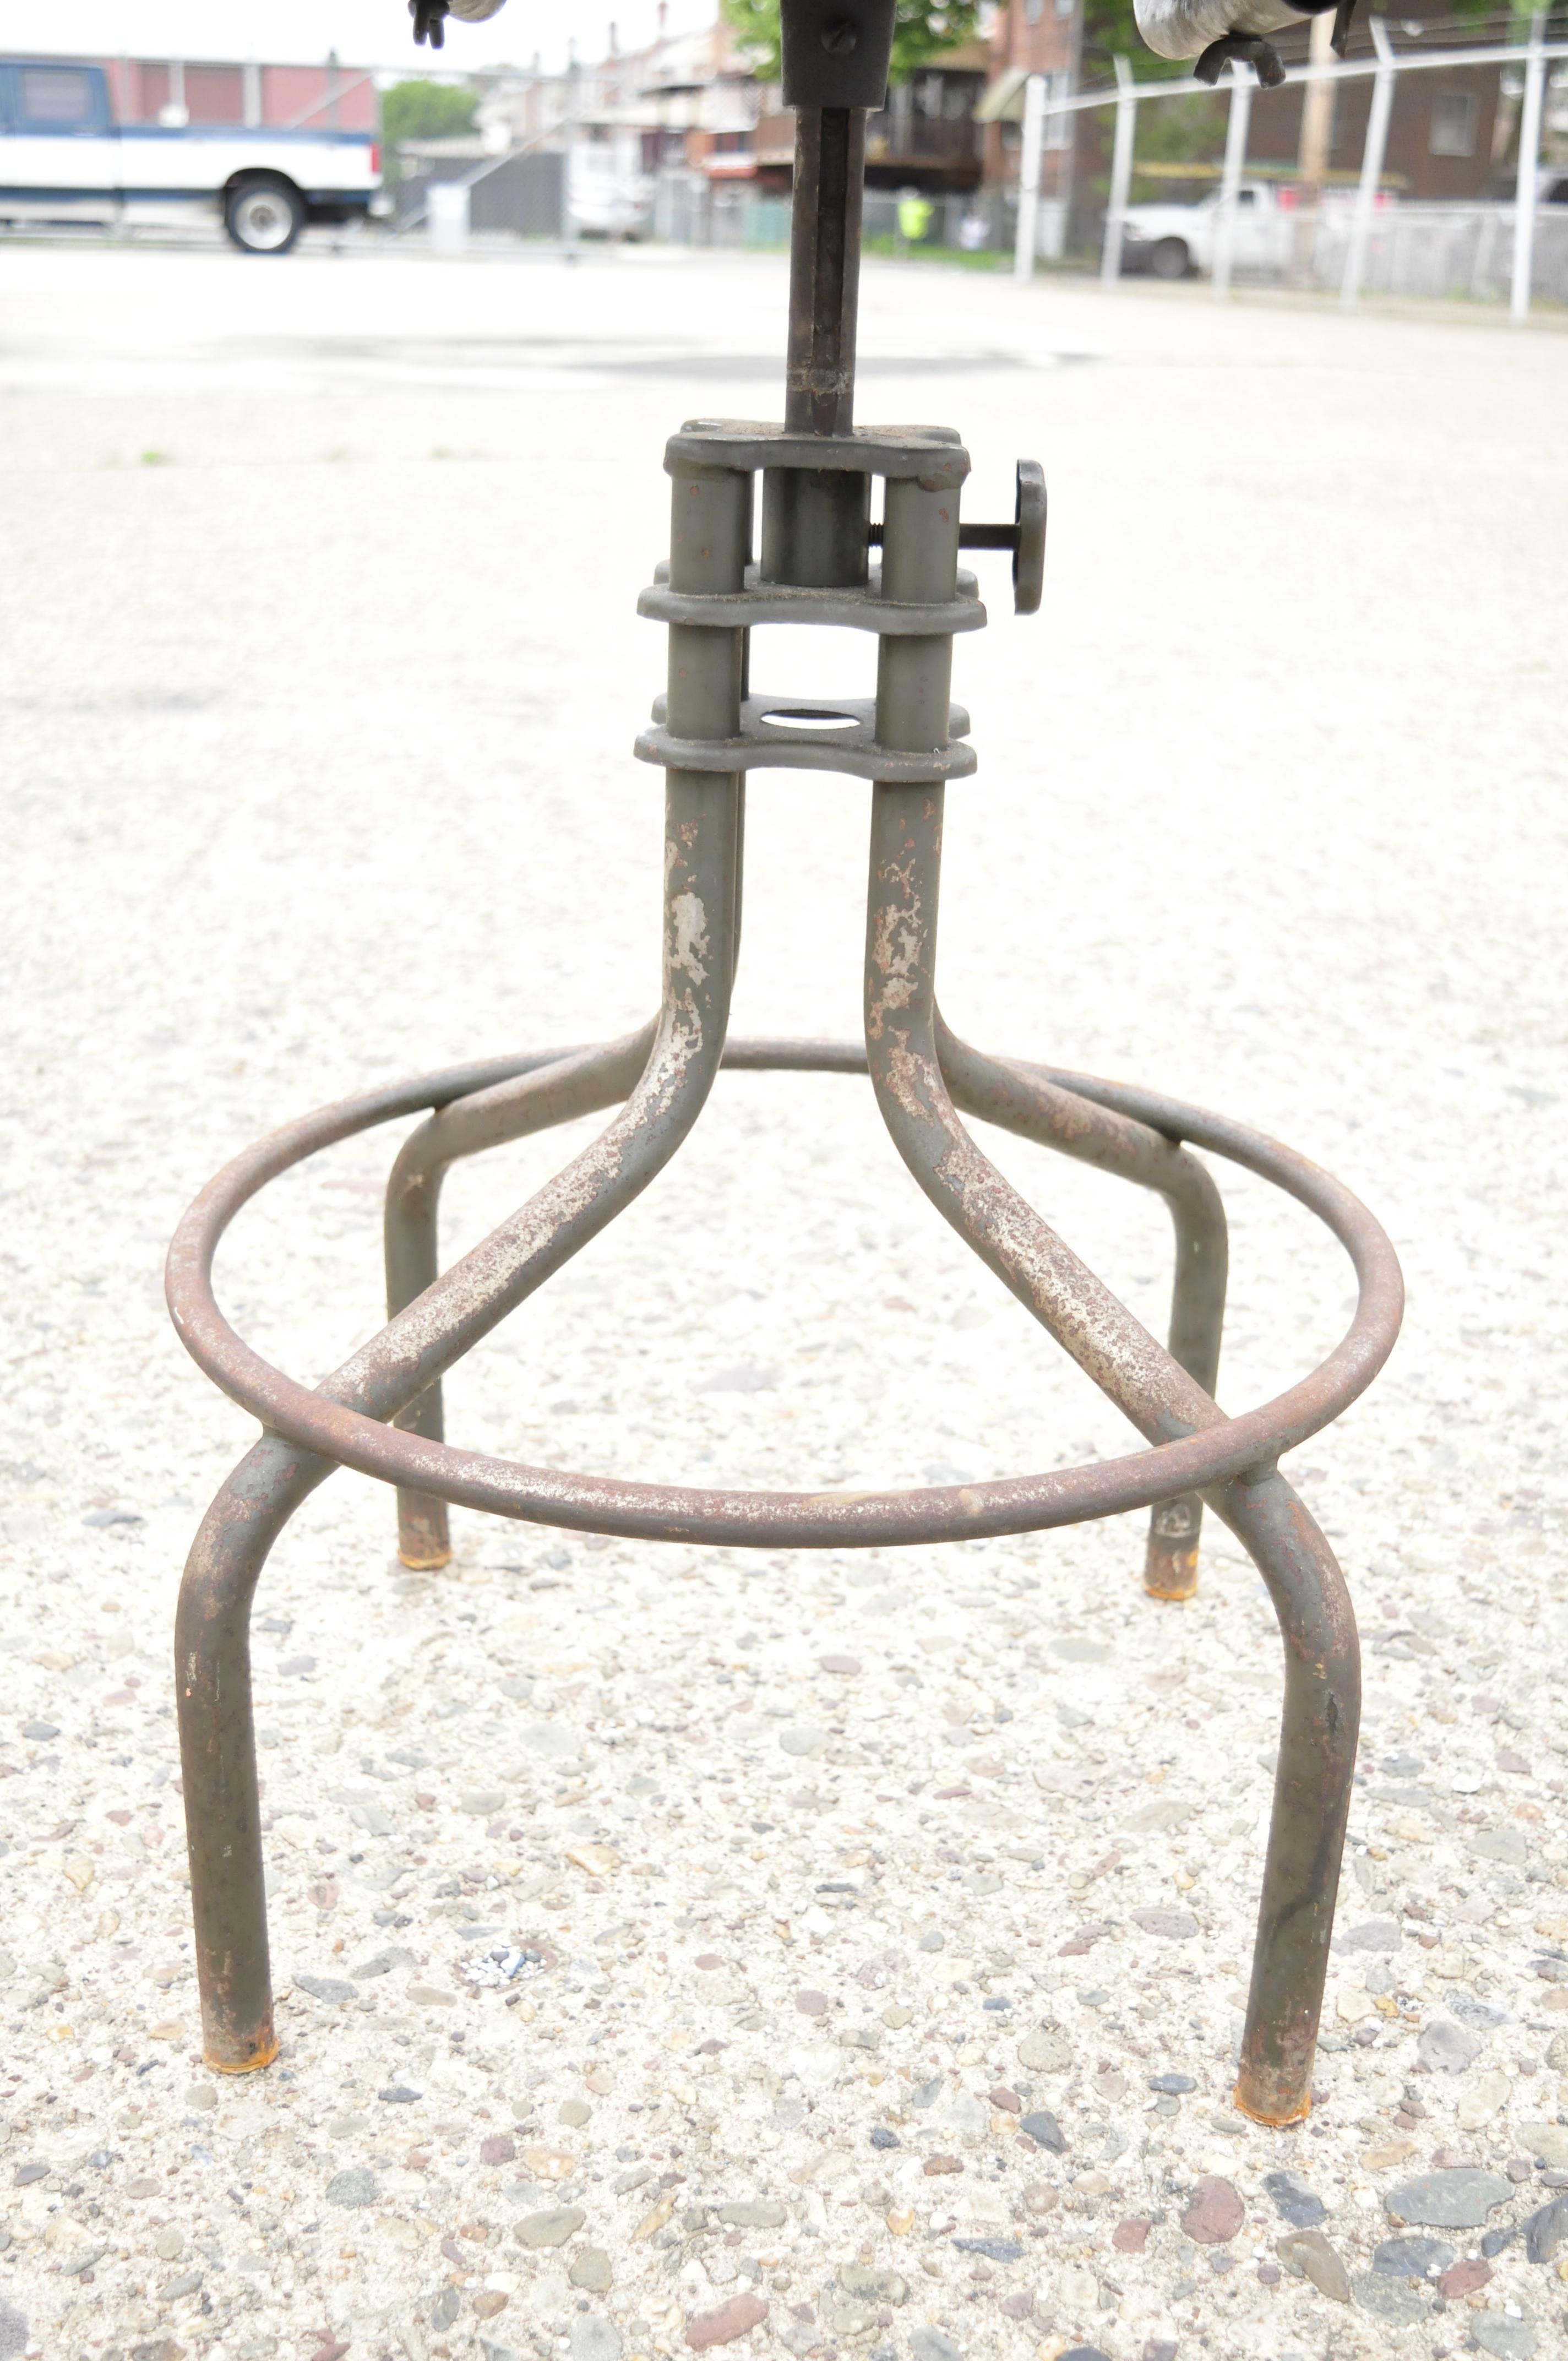 North American Antique American Industrial Adjustable Steel Metal Drafting Stool Work Chair